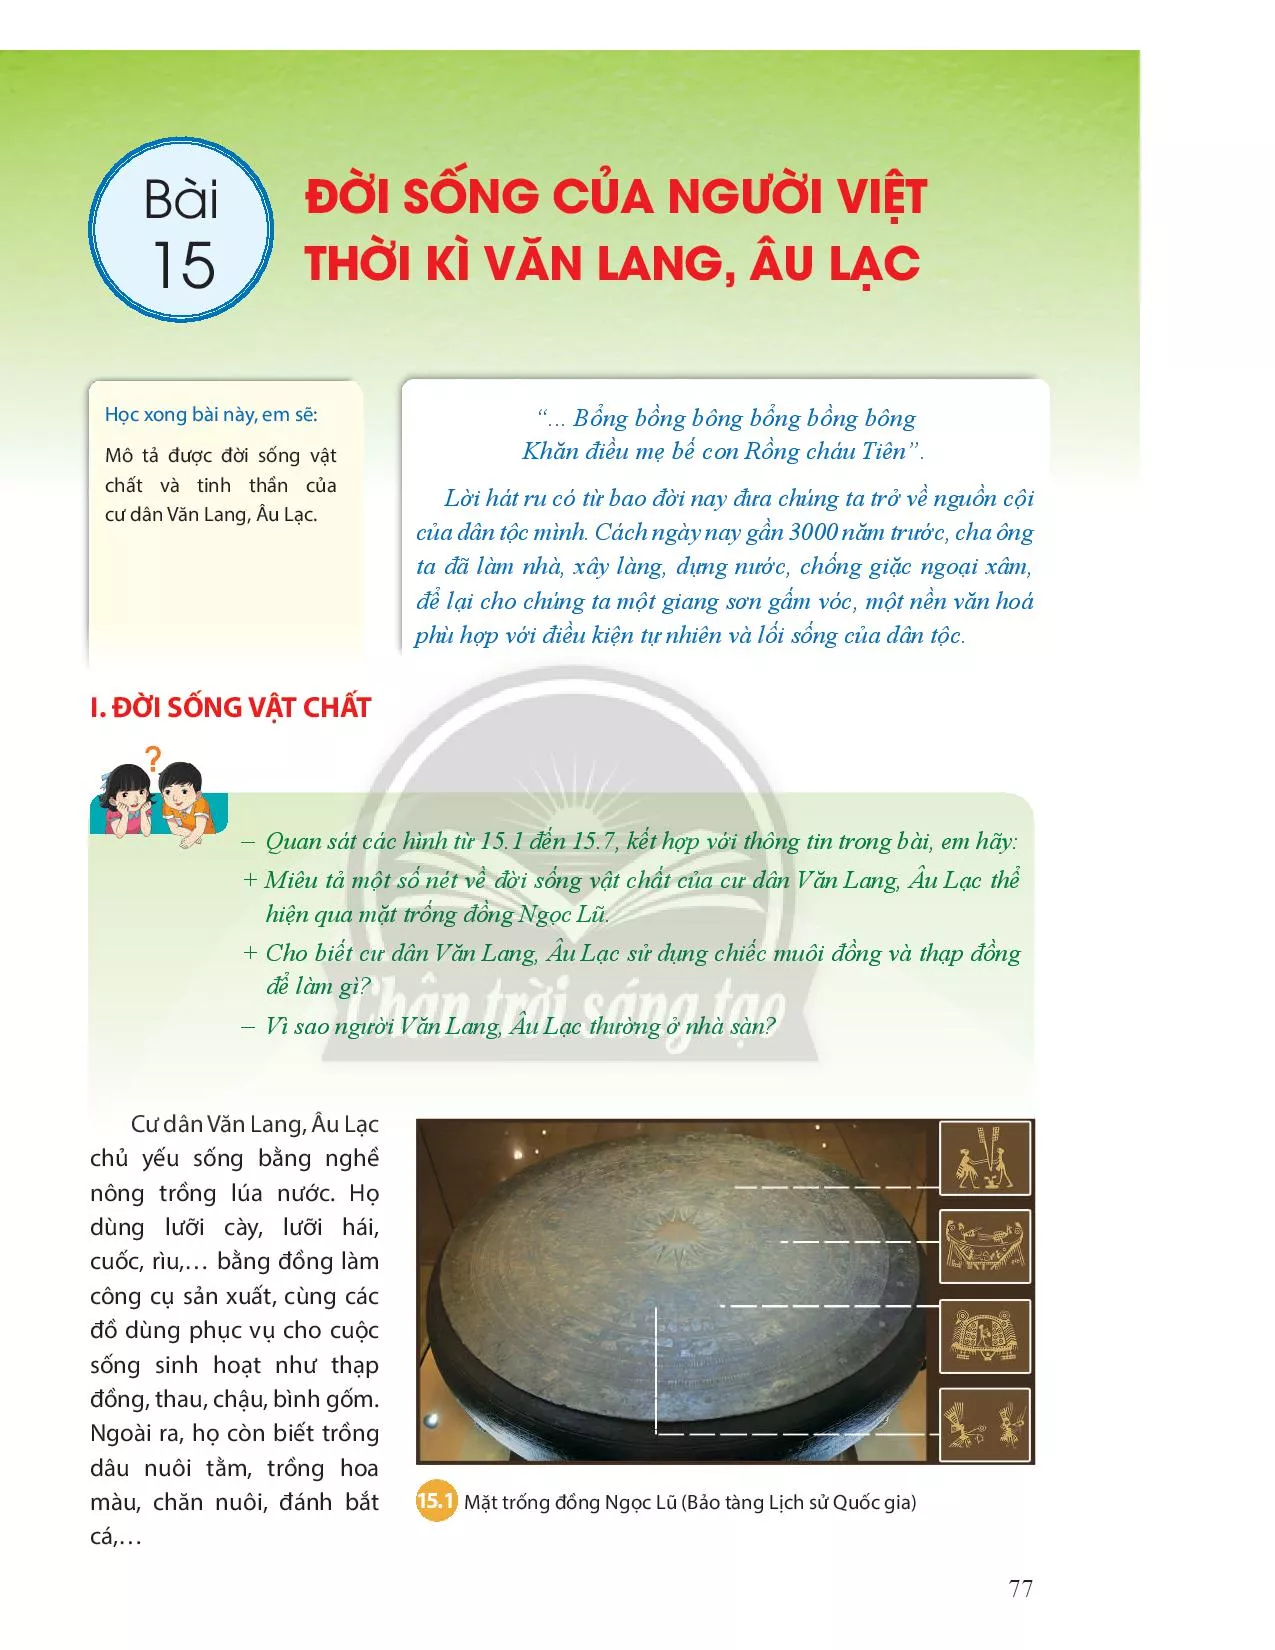 Bài 15. Đời sống của người Việt thời kì Văn Lang, Âu Lạc